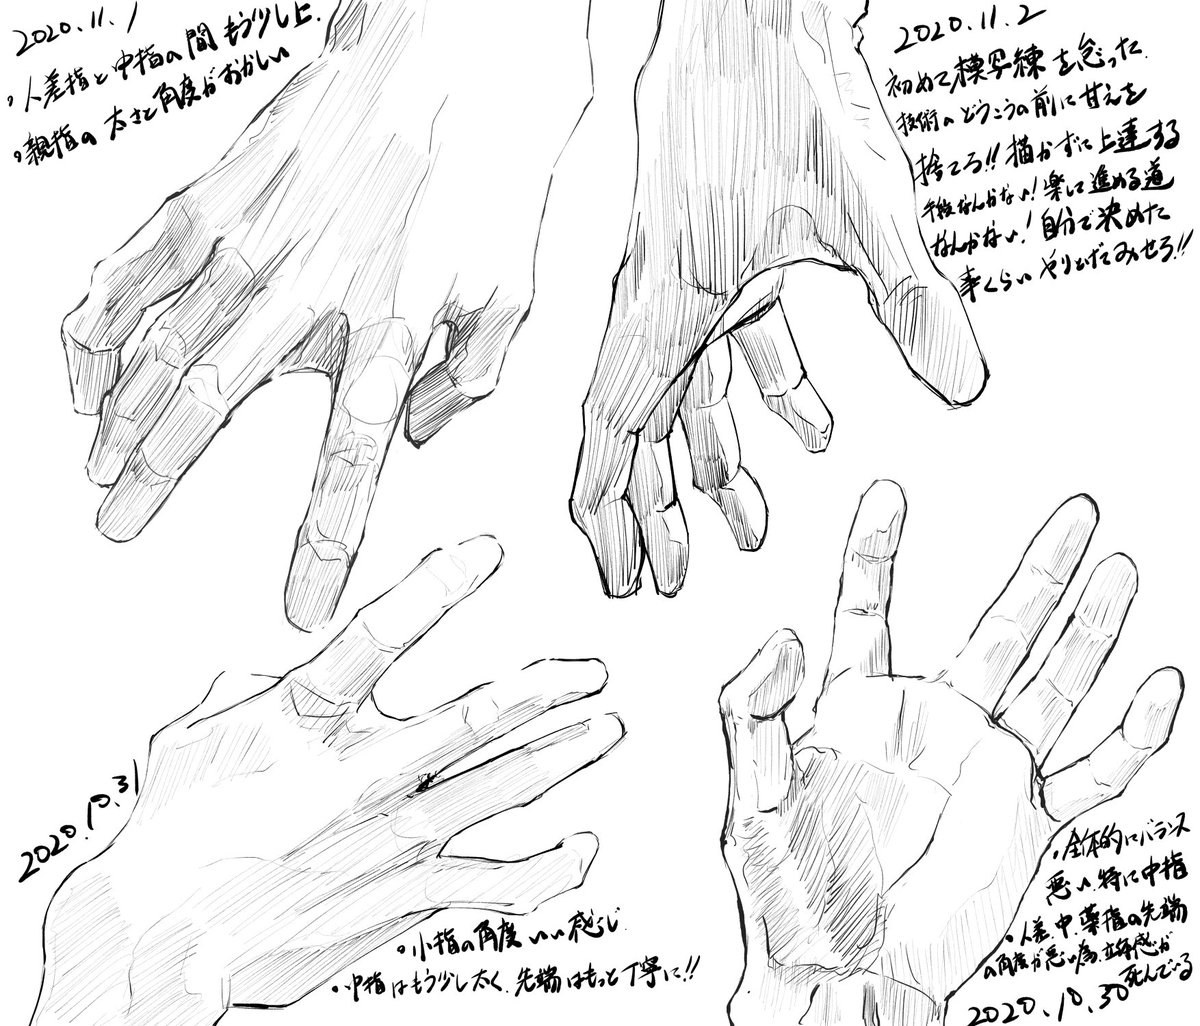 朝の手の模写練
2020/10/26～2020/11/10
まだまだ道のりは長い。
…存分に楽しんでやる?
#模写 #落書き #イラスト #illustration 